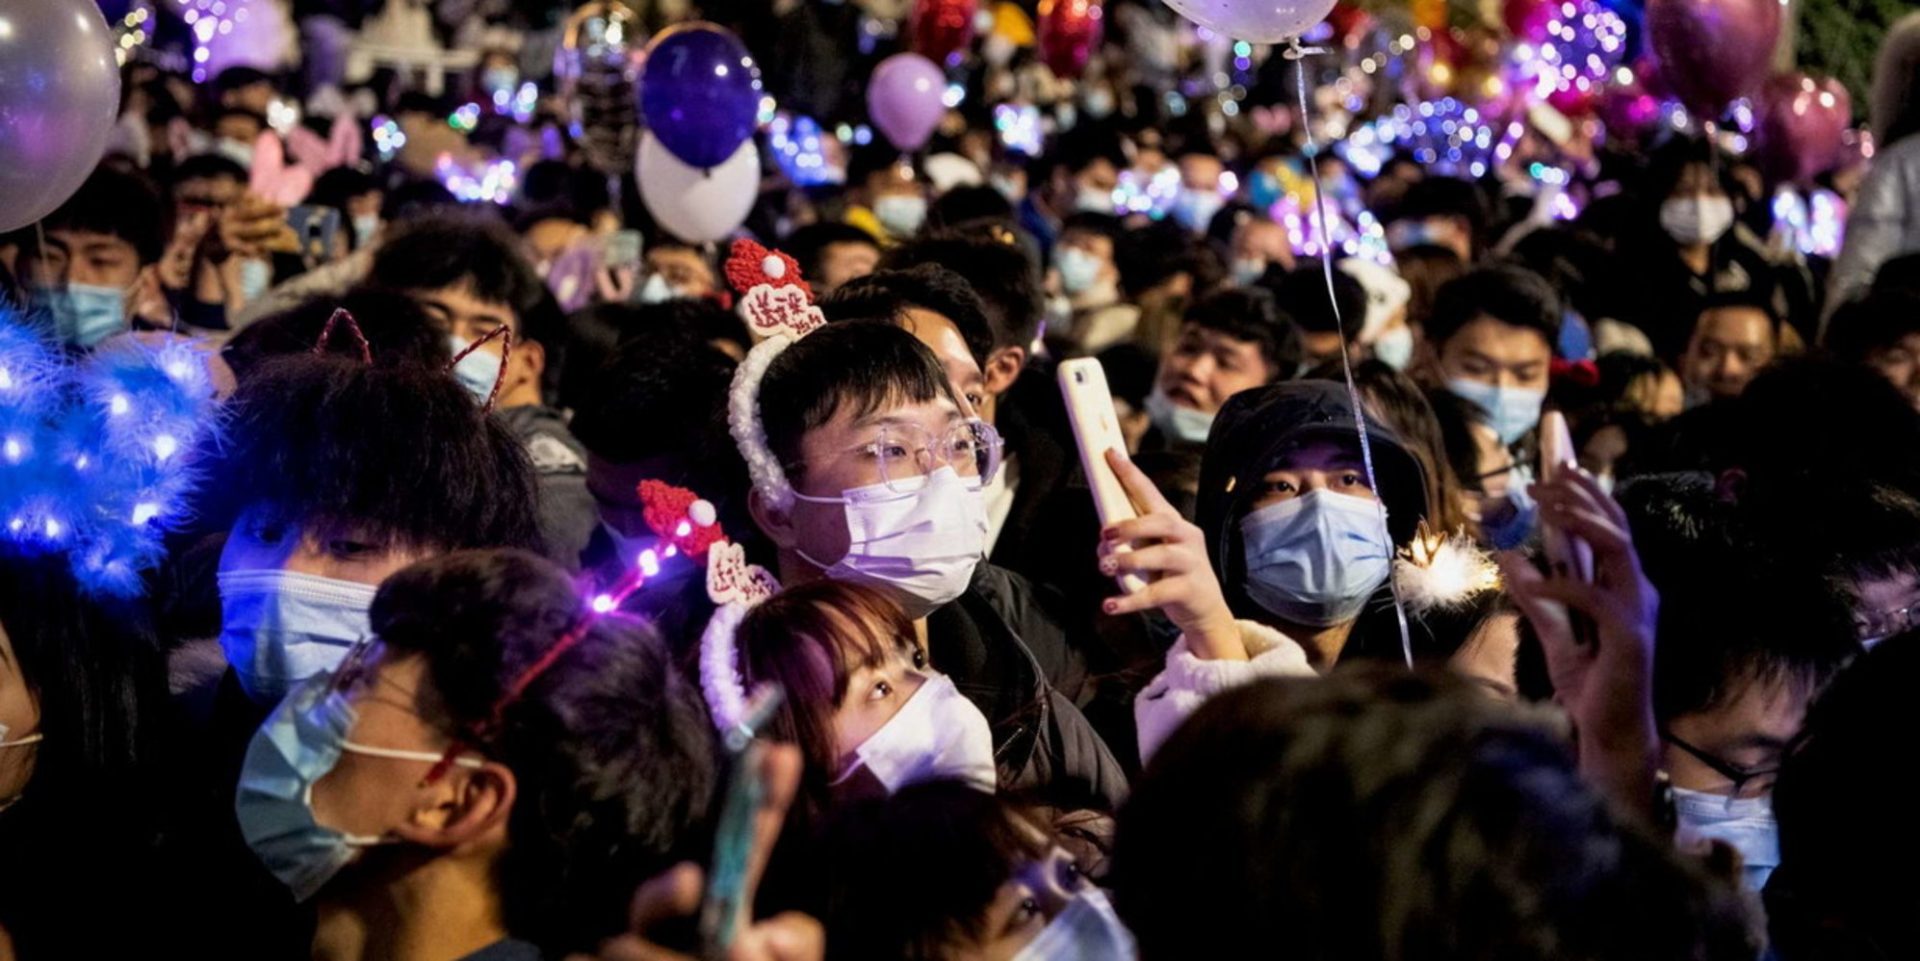 Urlano al complotto perché a Wuhan hanno festeggiato Capodanno, ma non sono capaci di tenere la mascherina per mezz’ora